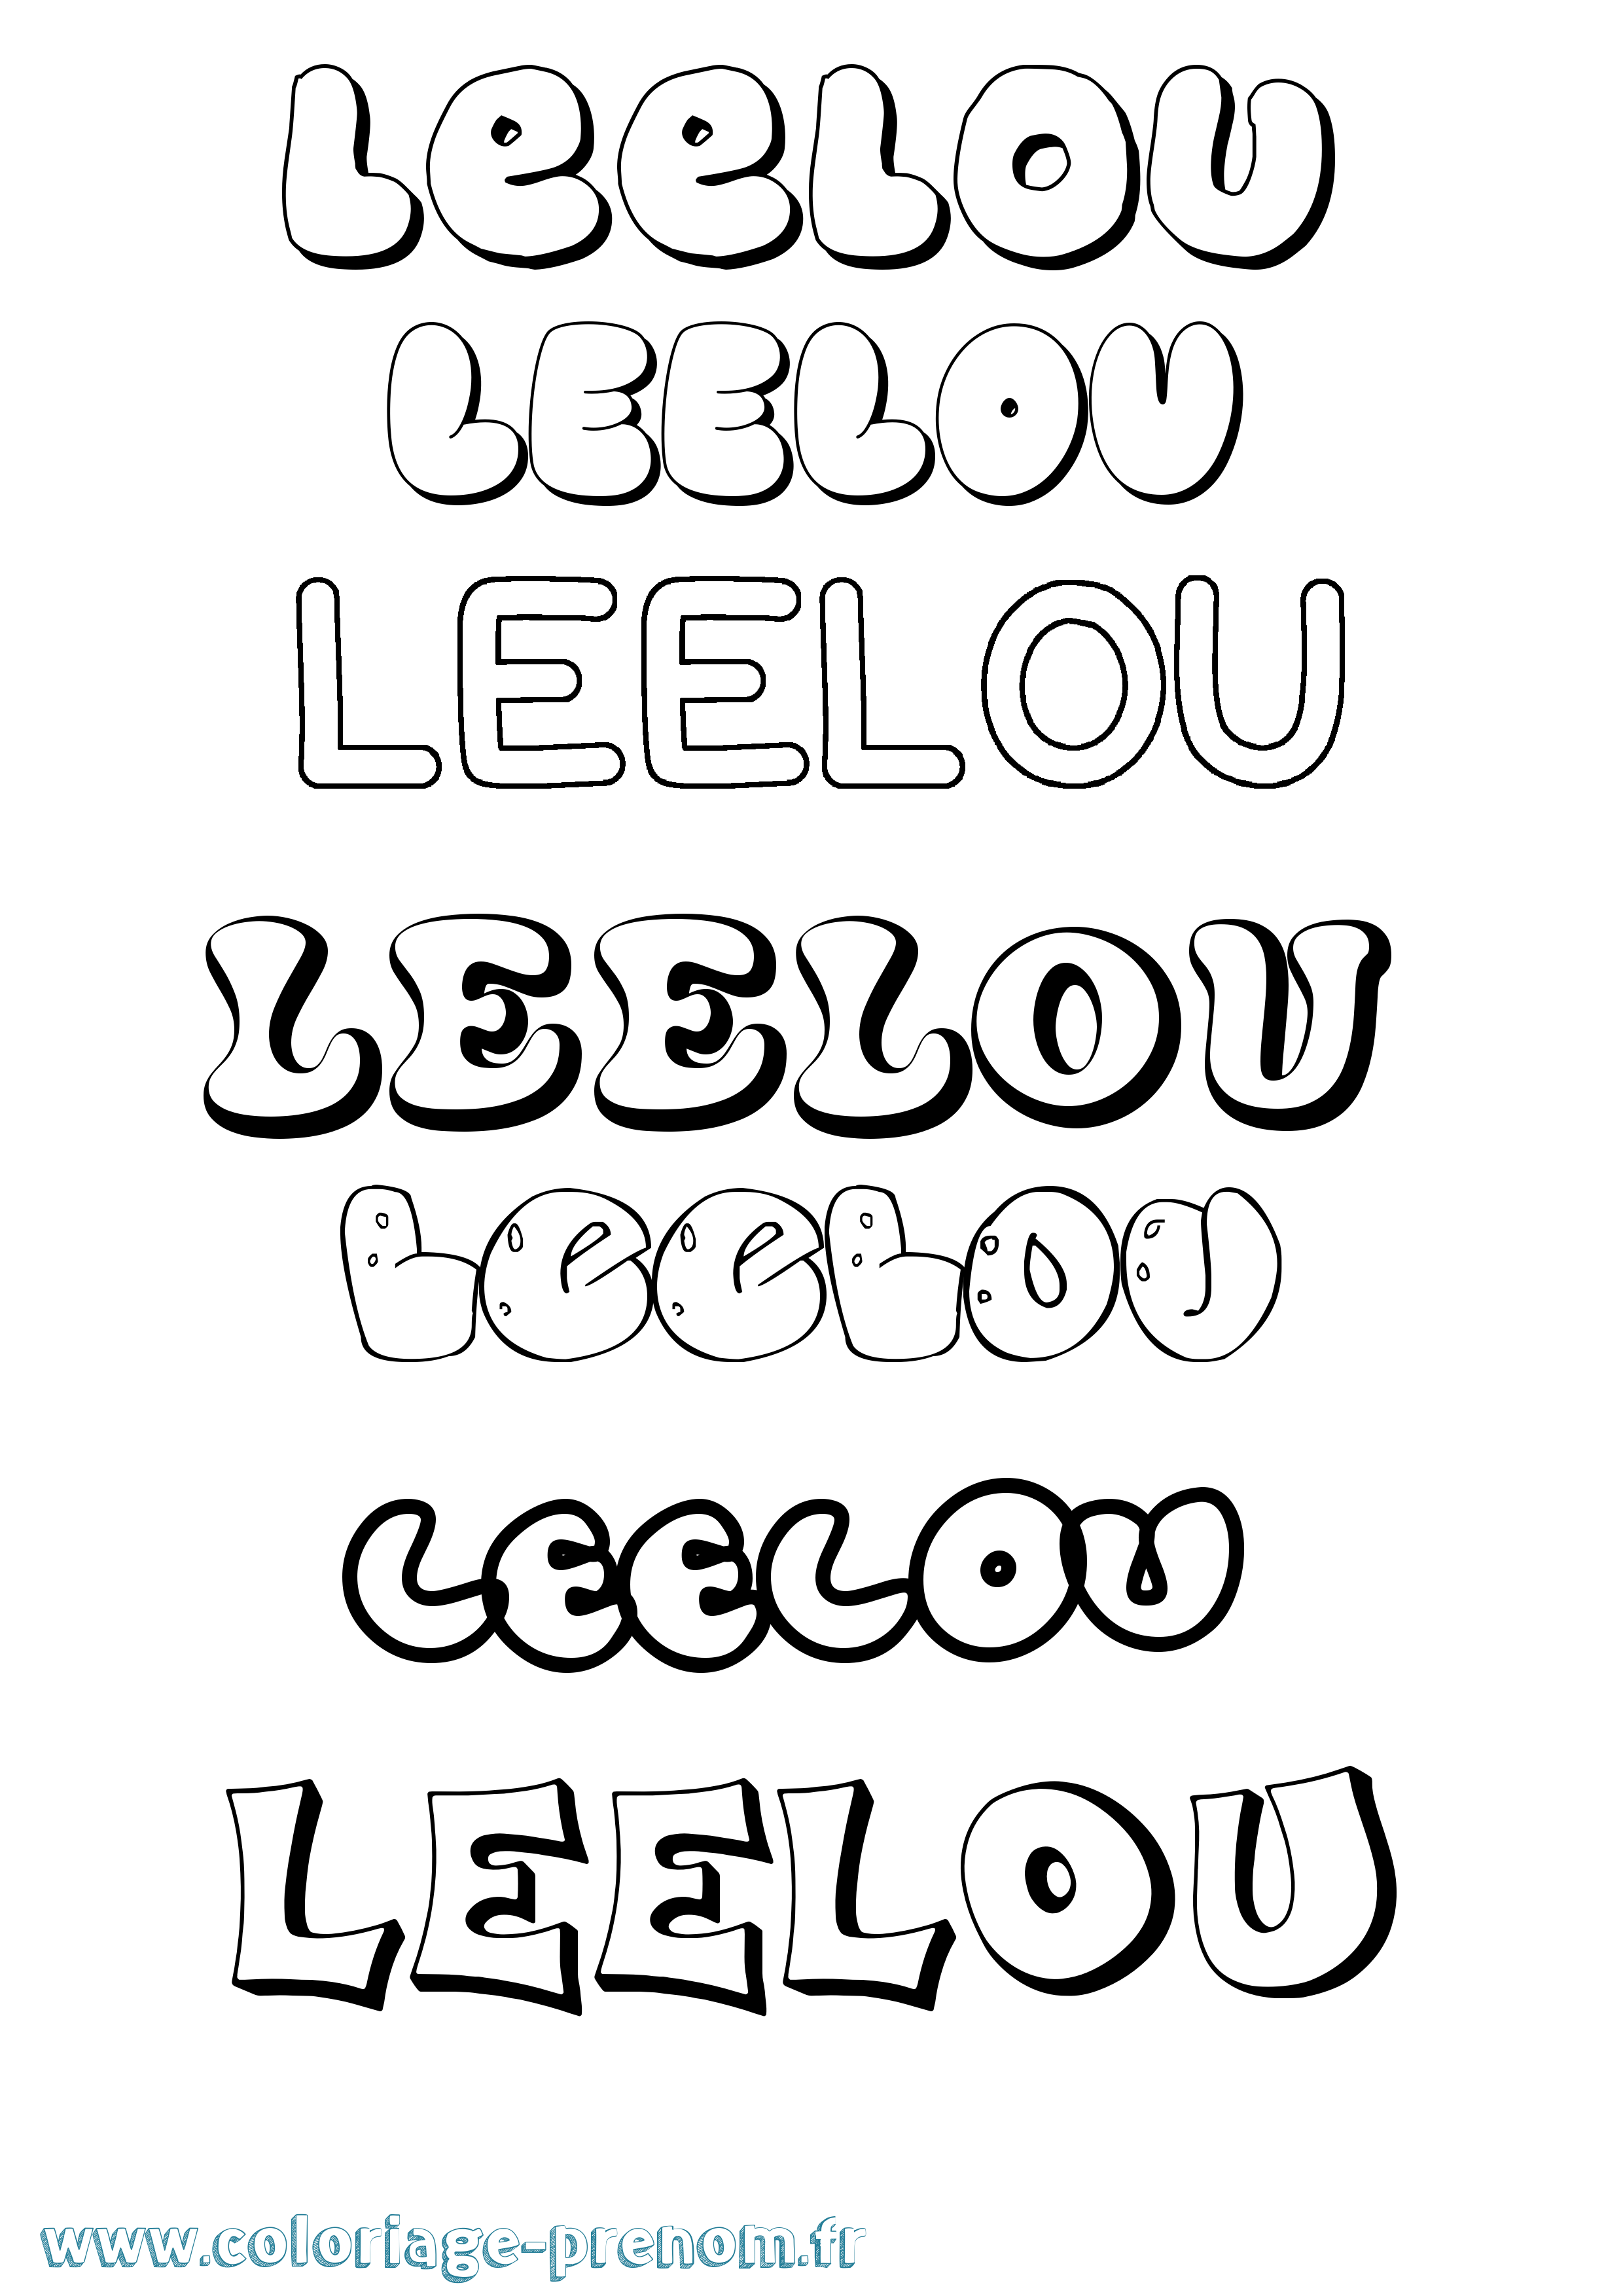 Coloriage prénom Leelou